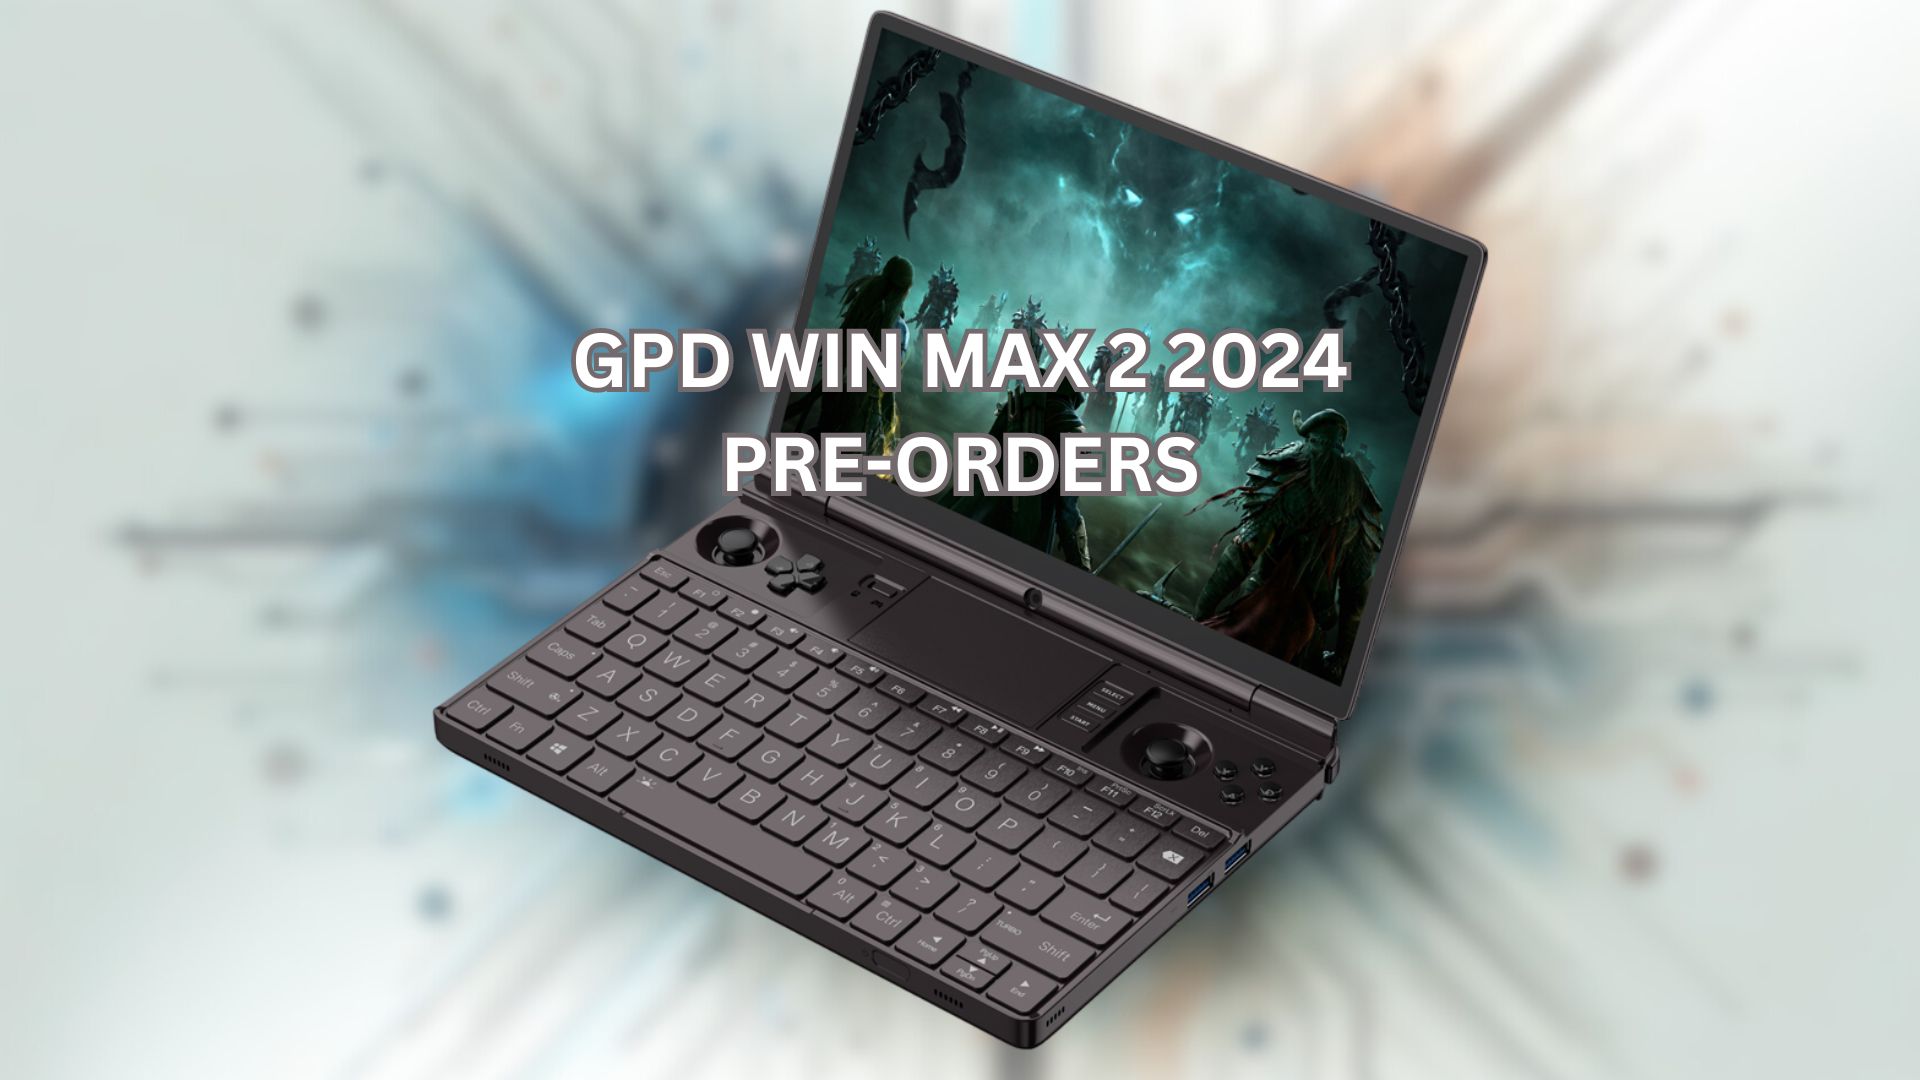 GPD WIN MAX  2 2024 pre-orders - The Ultimate Handheld Gaming PC